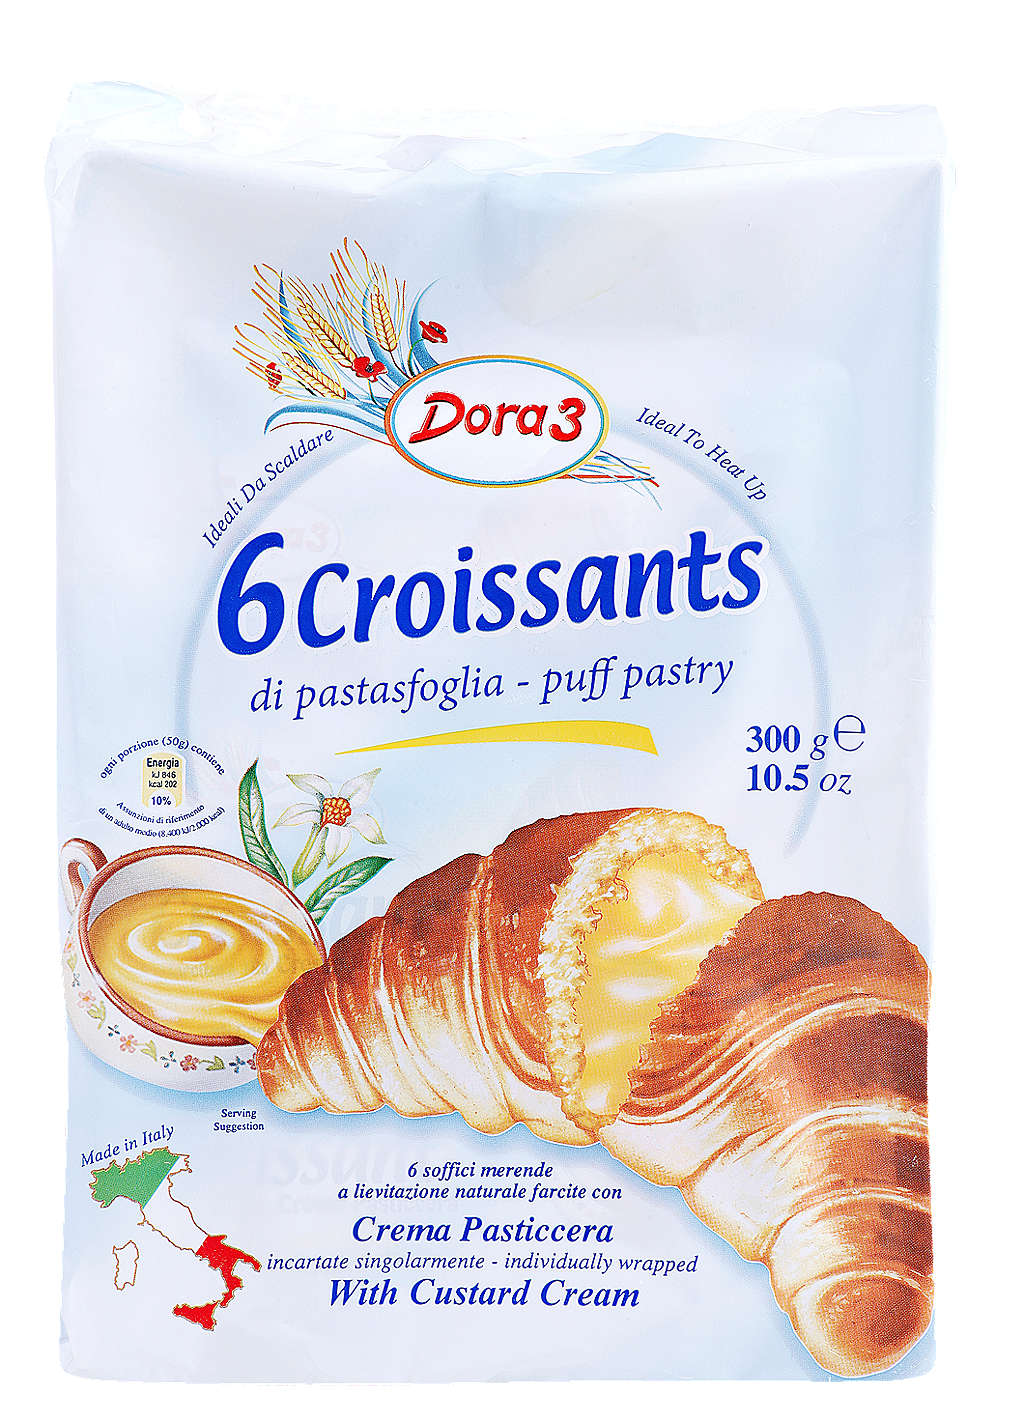 Fotografija ponude Croissant 